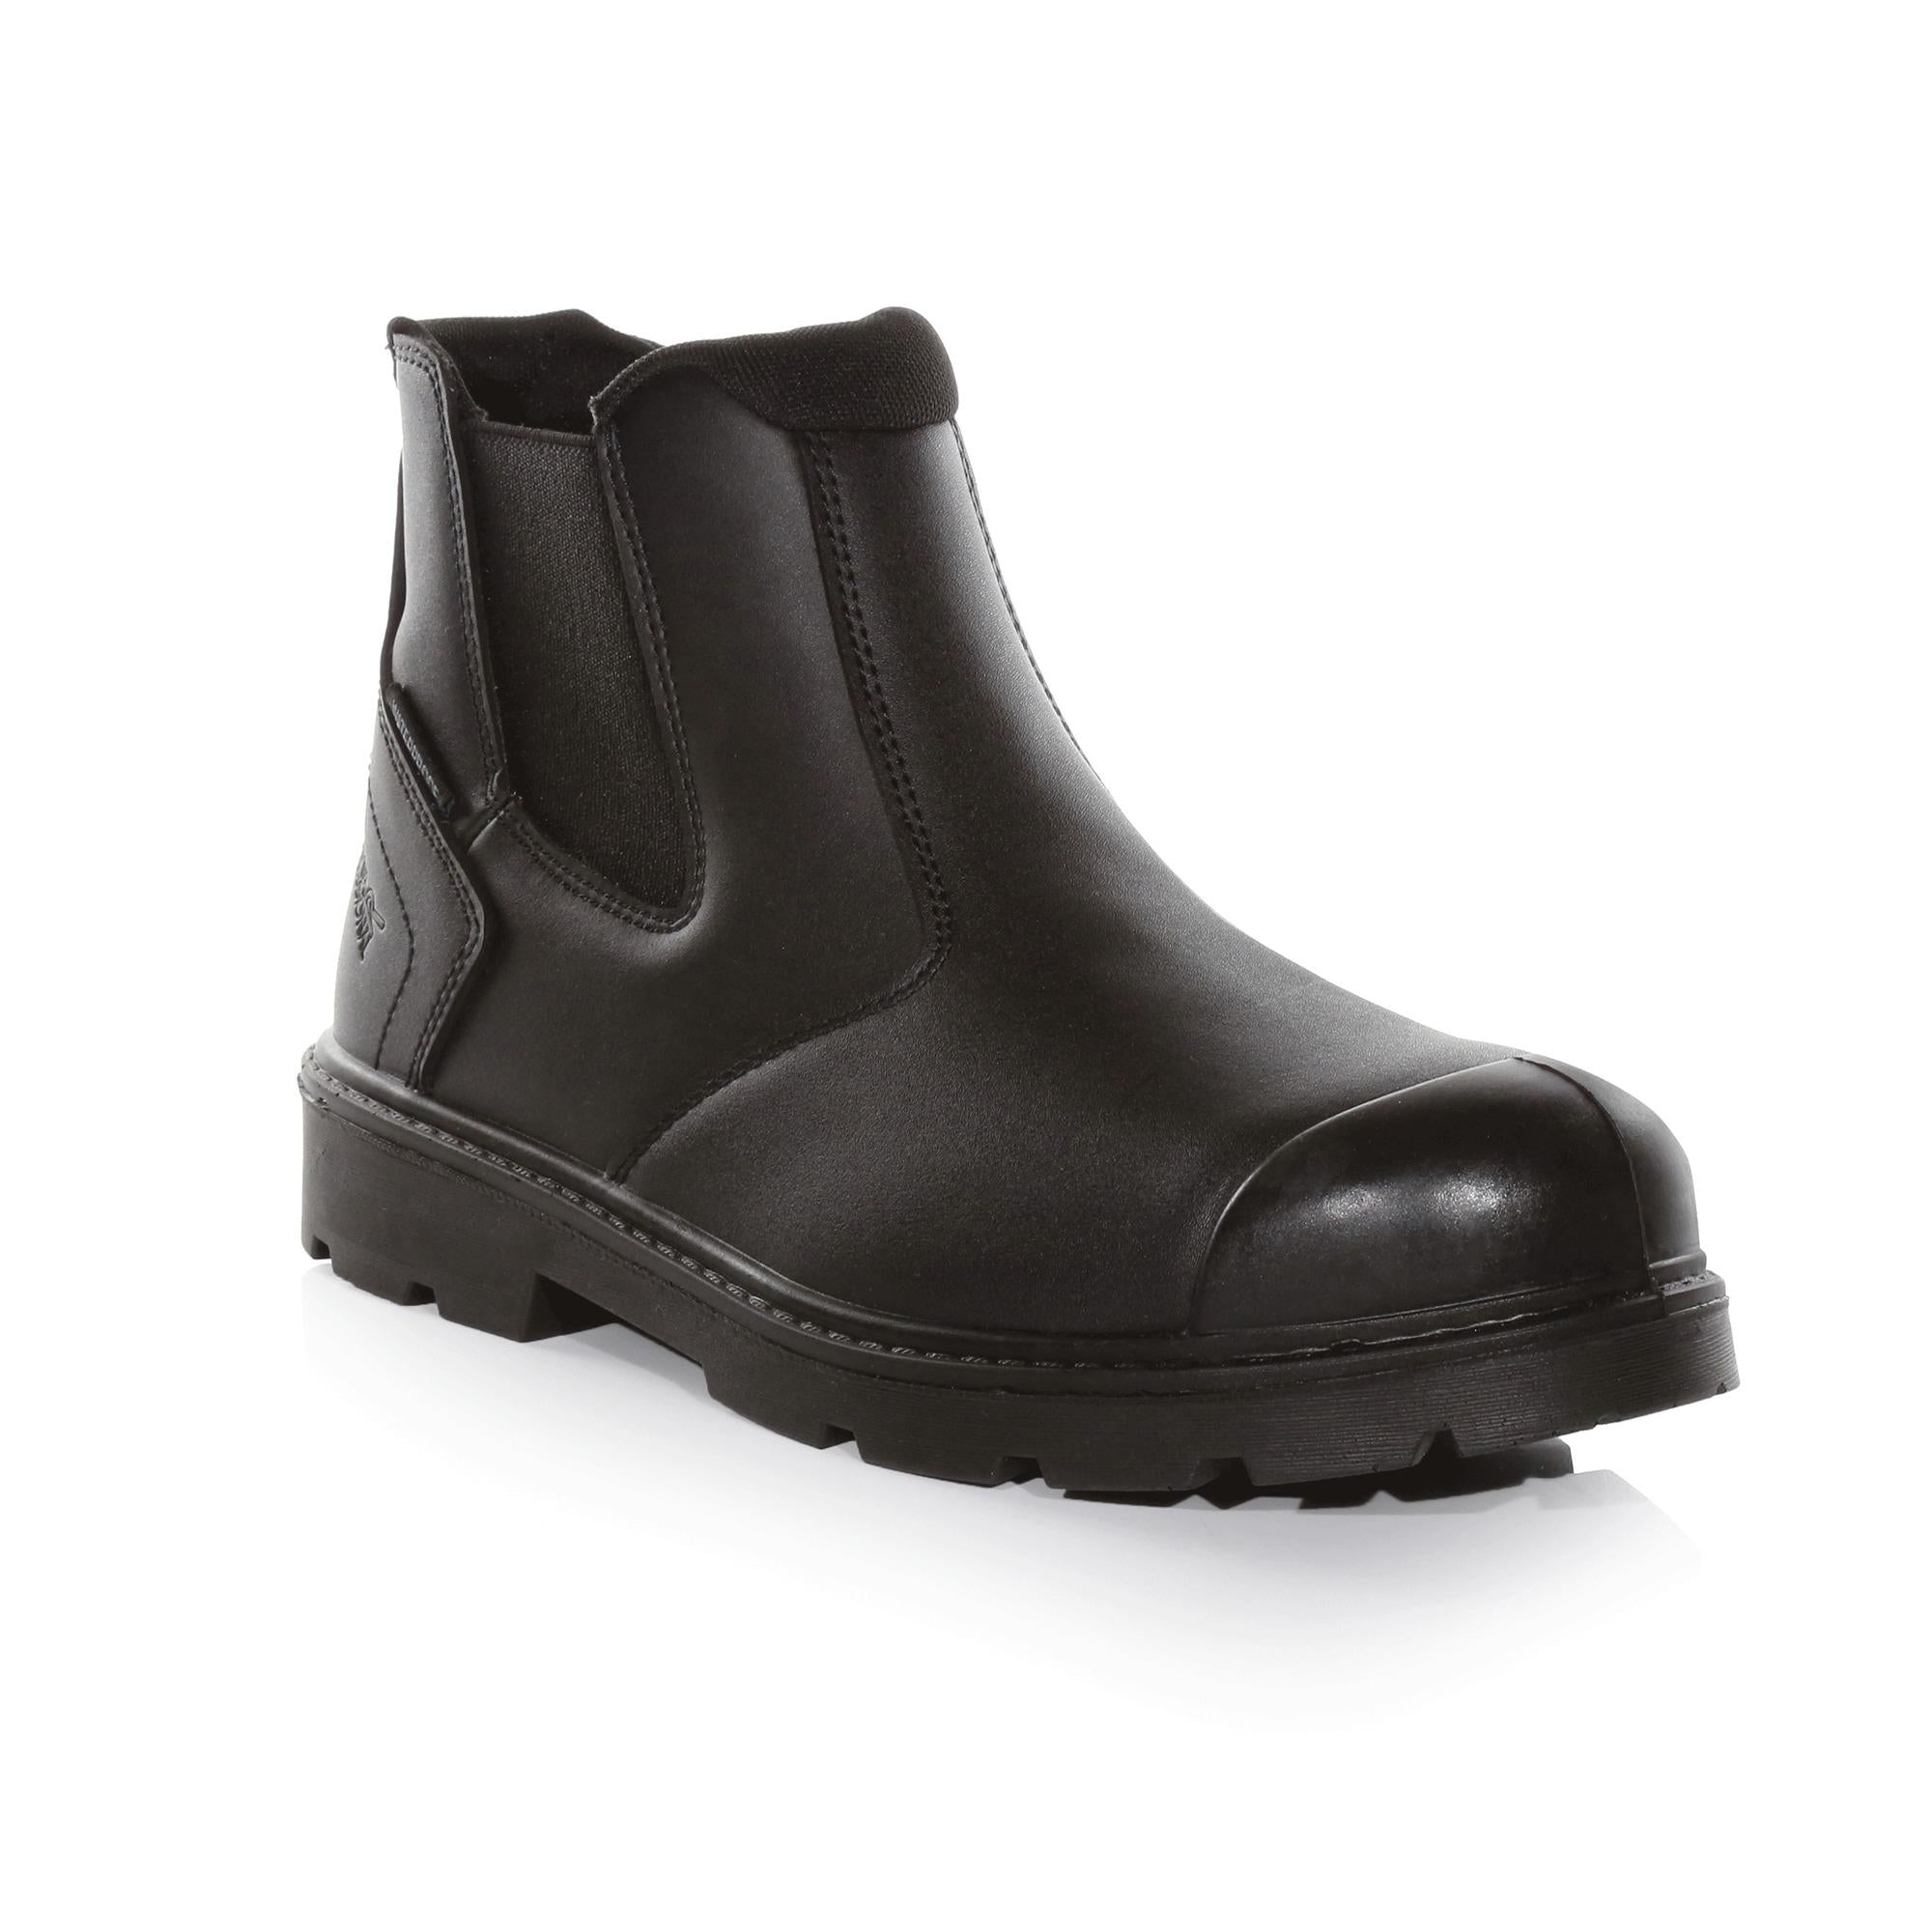 Regatta Dealer S3 black waterproof steel toe/midsole safety work boot